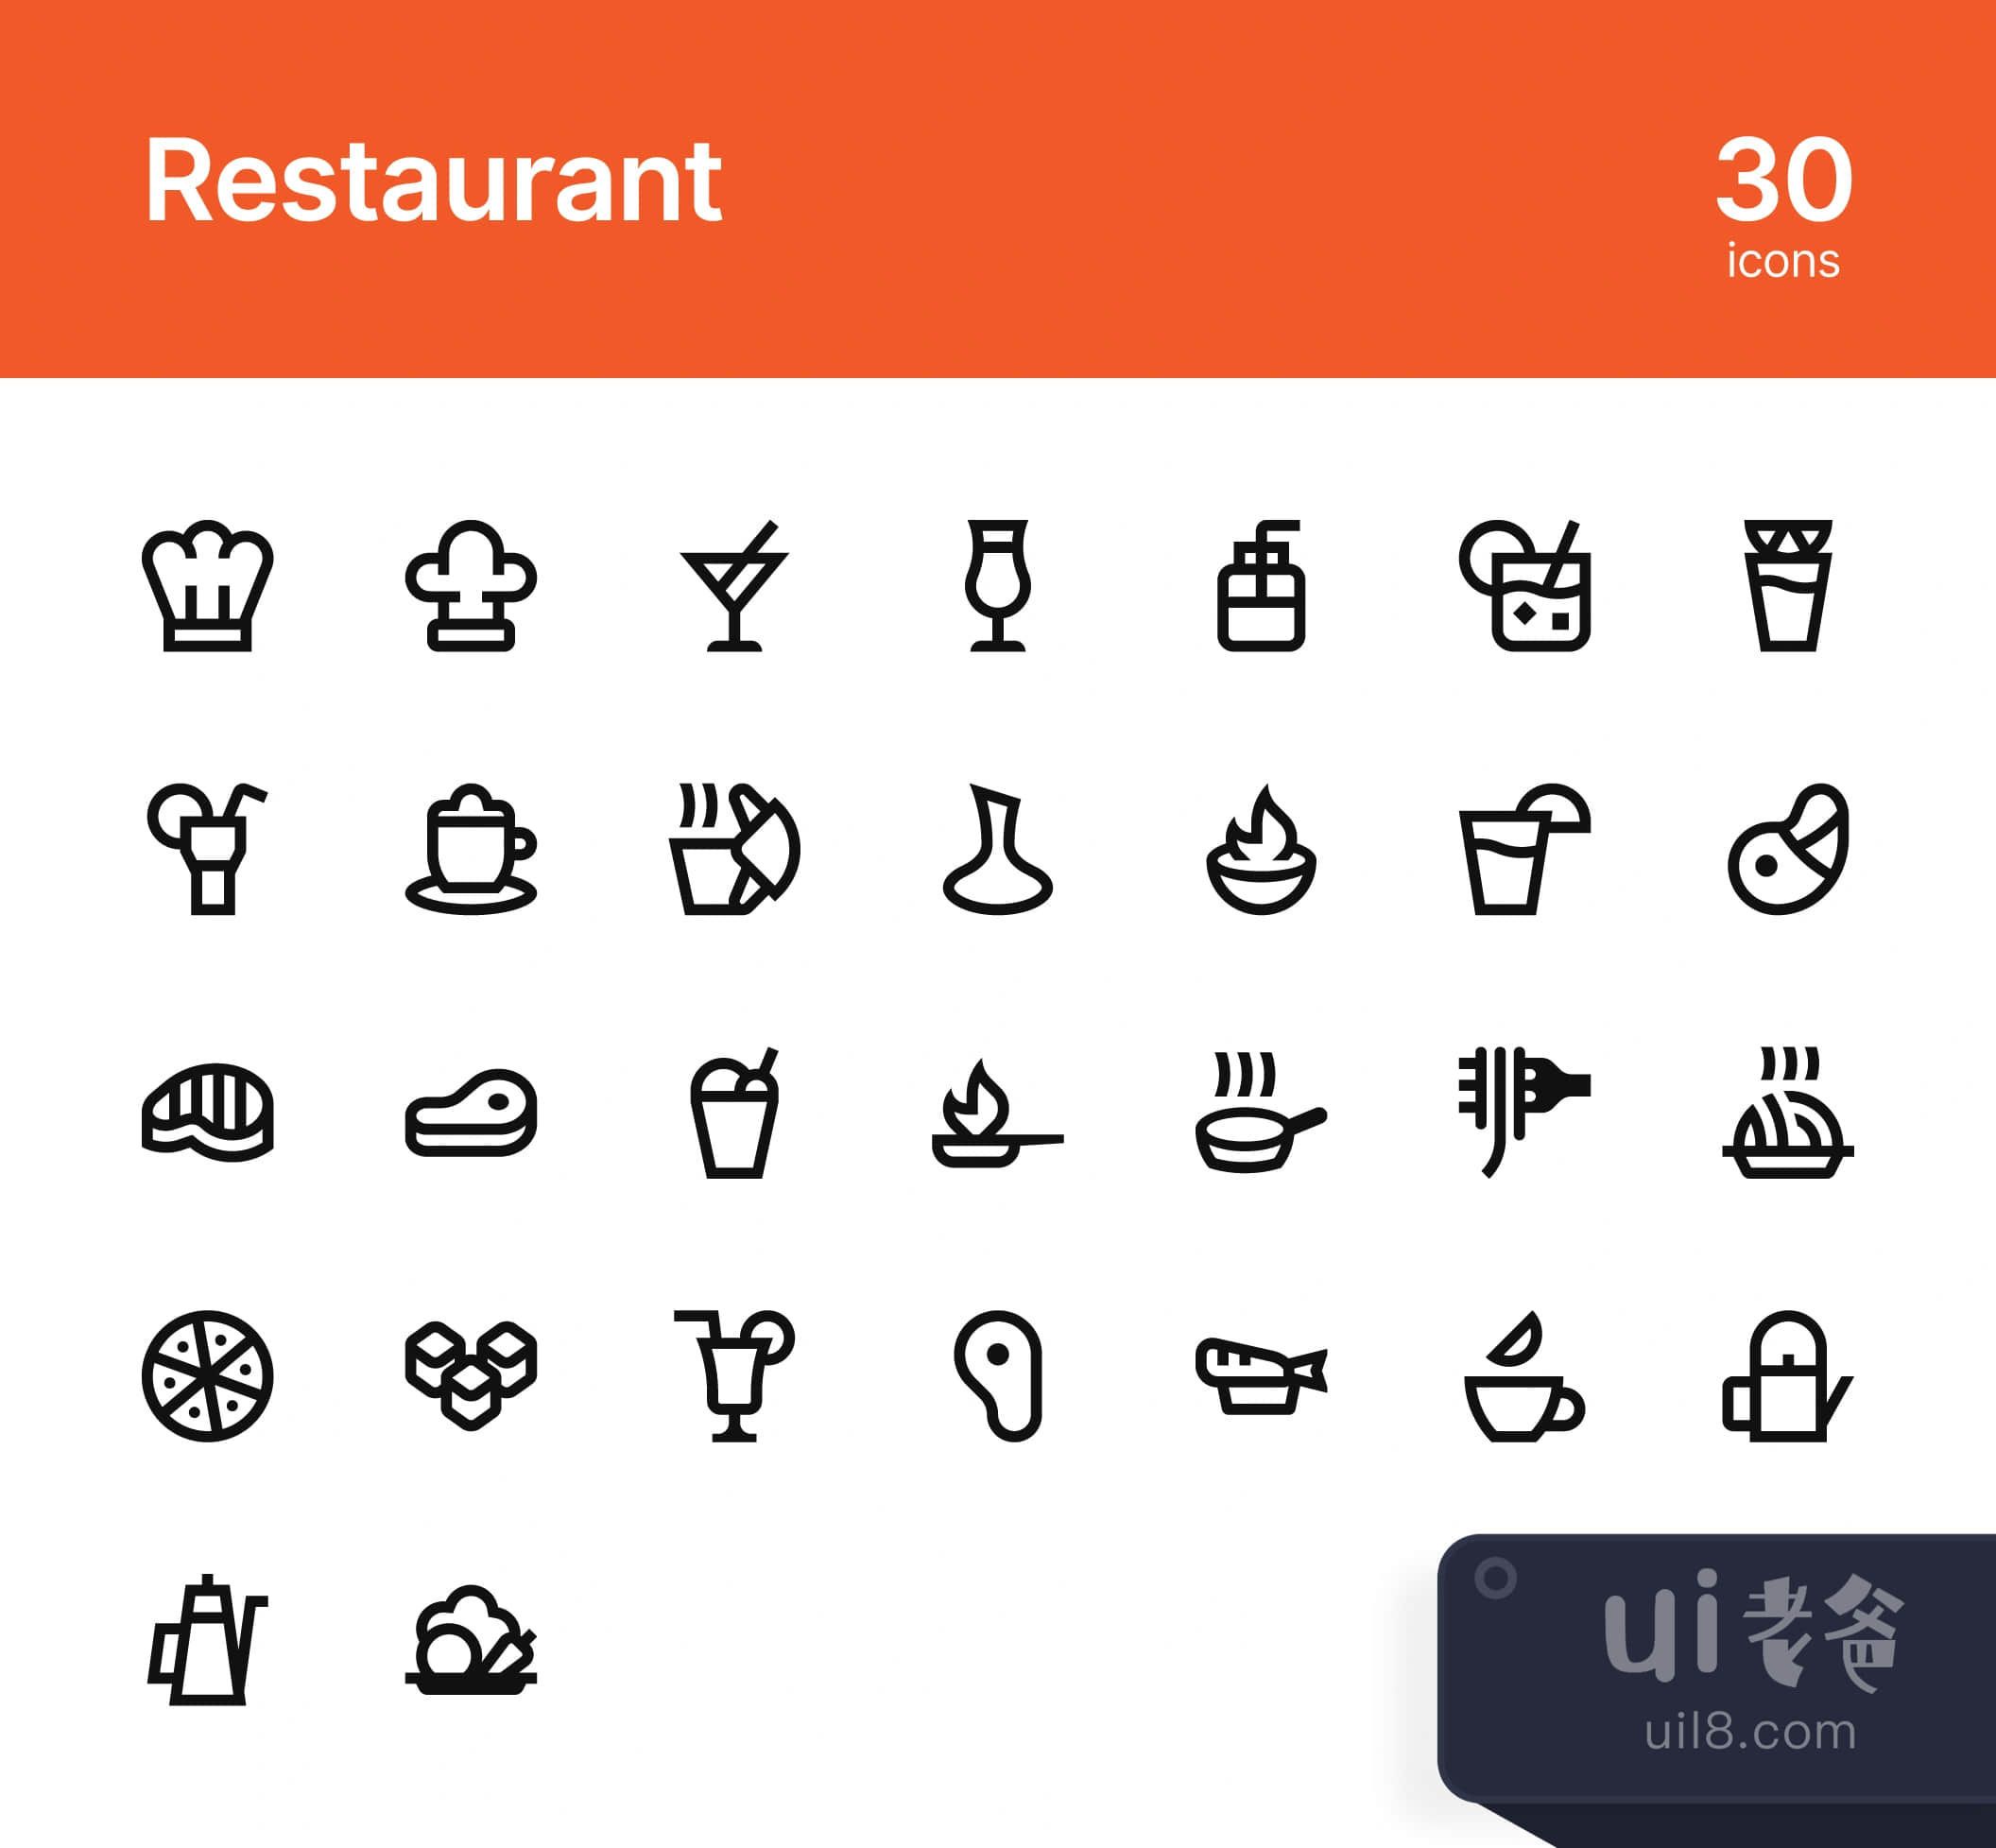 餐厅图标 (Restaurant icons)插图